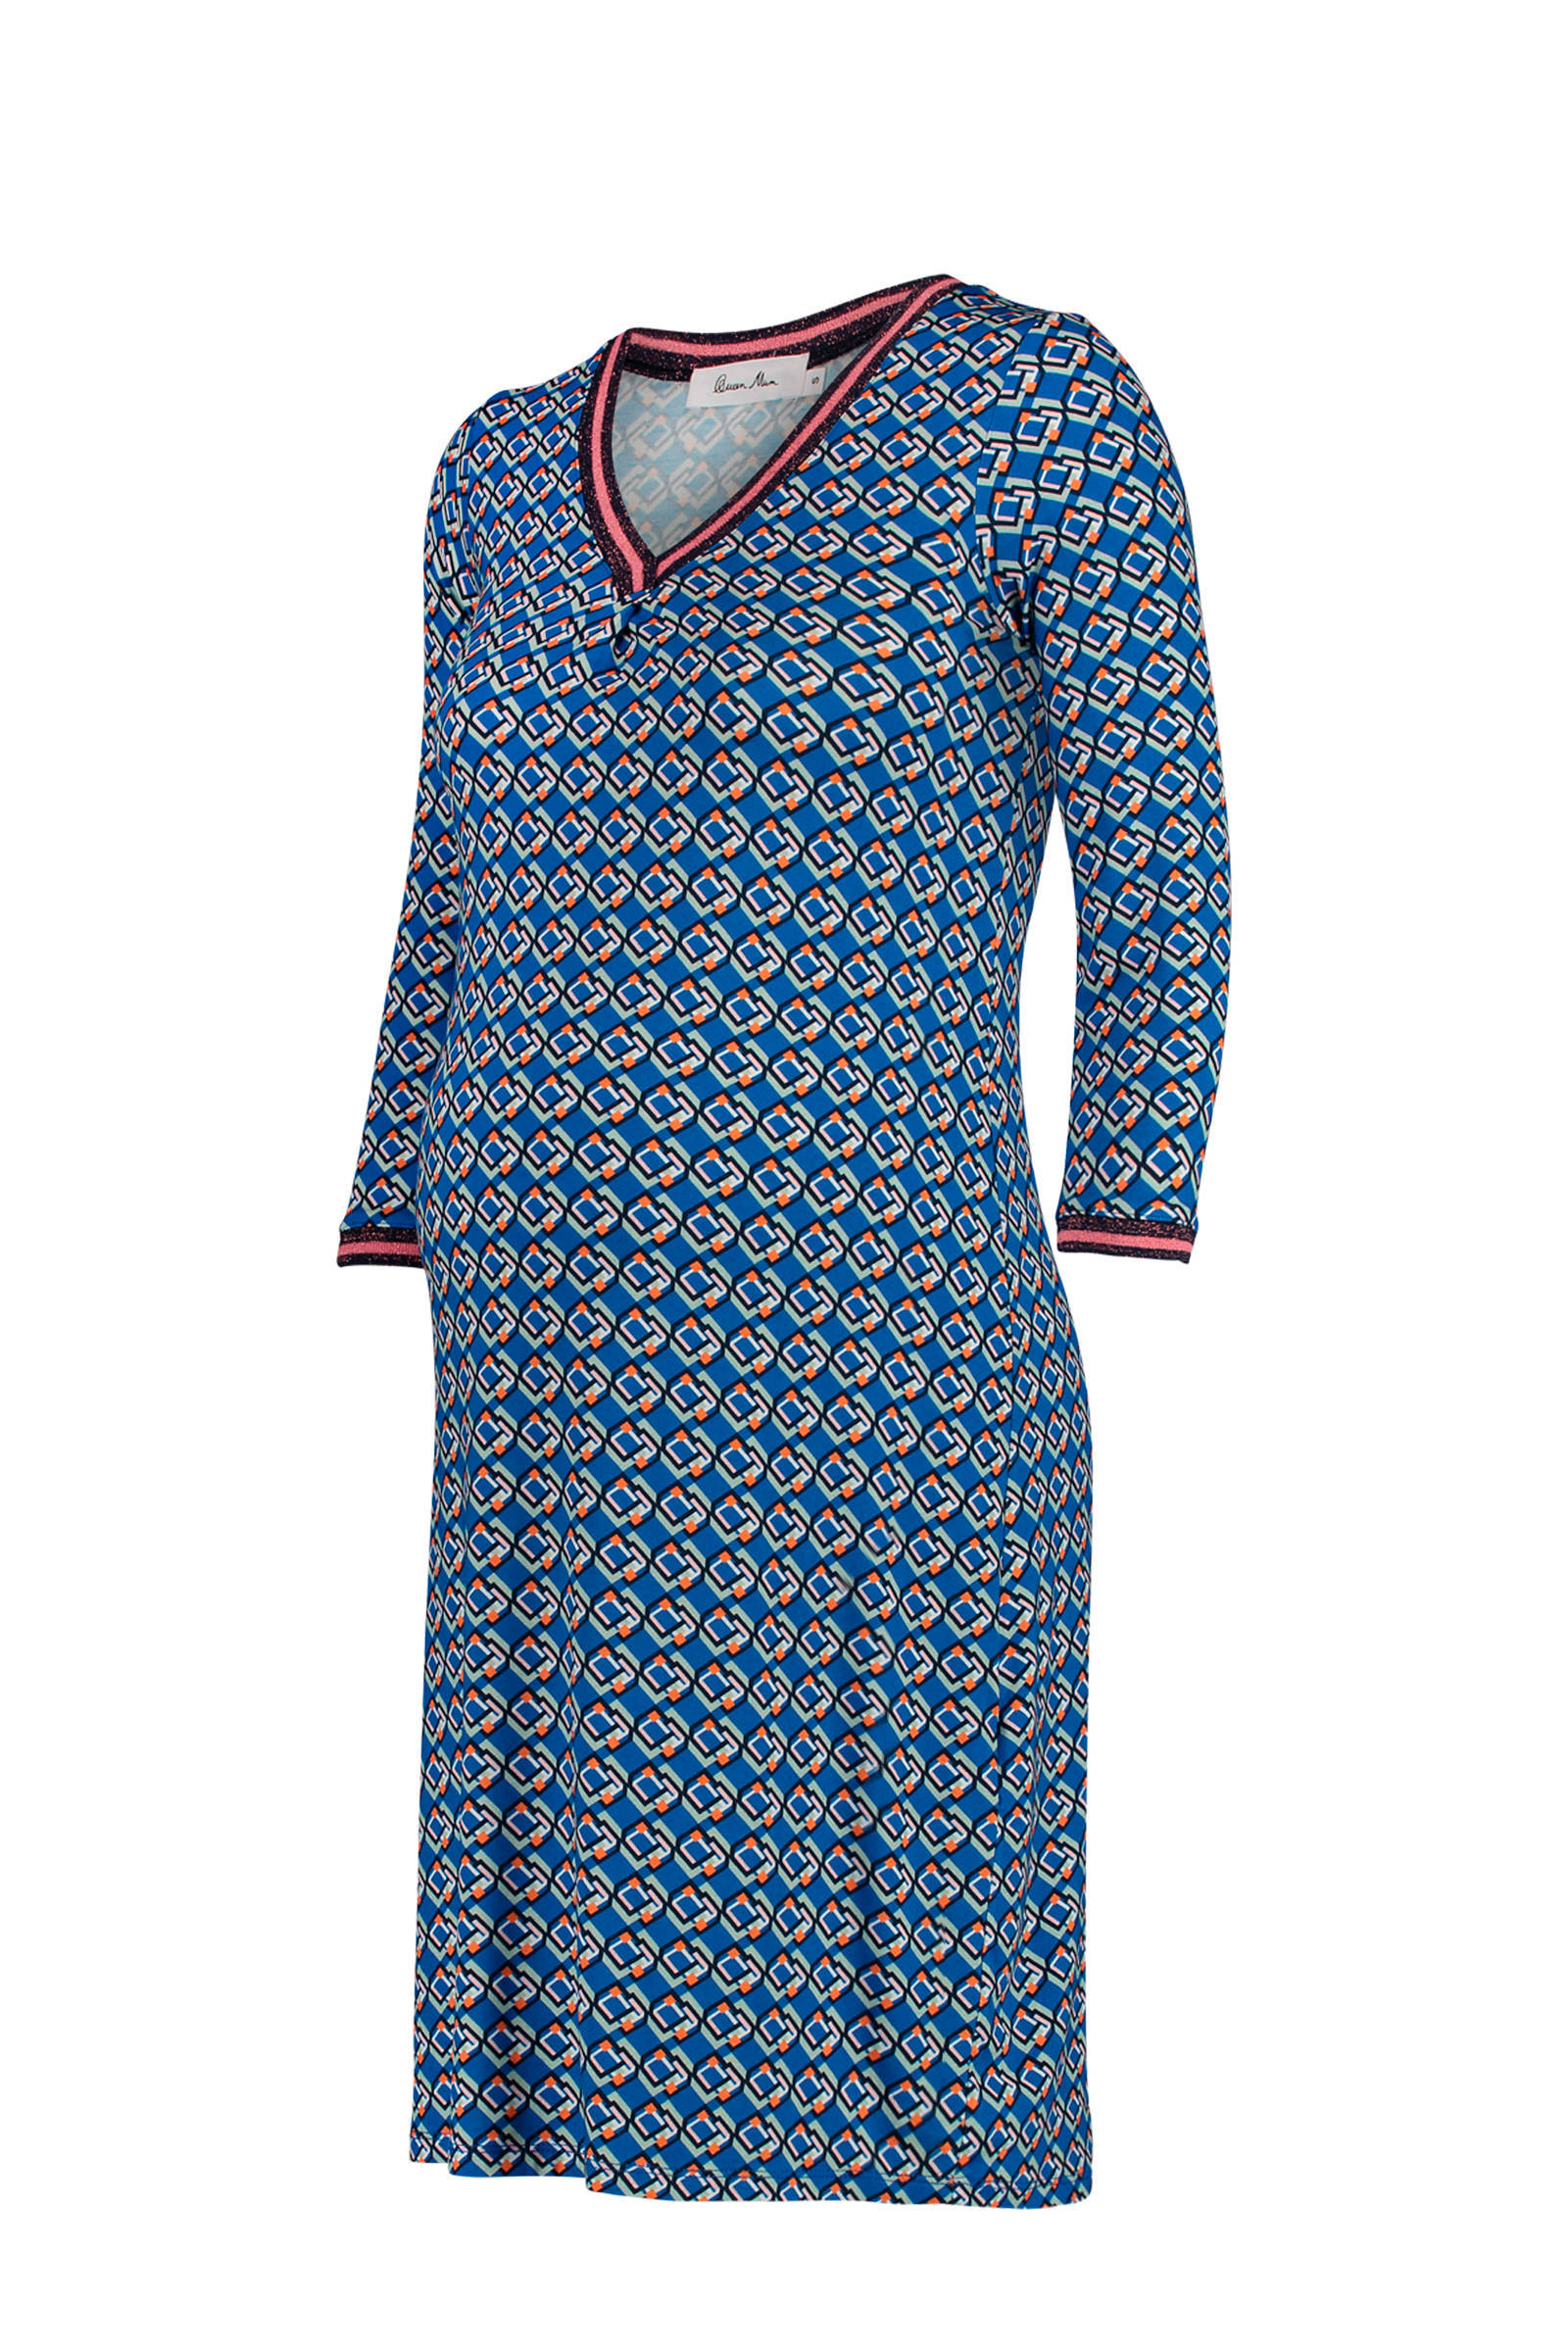 Queen mum zwangerschaps jurk jersey all over print online kopen